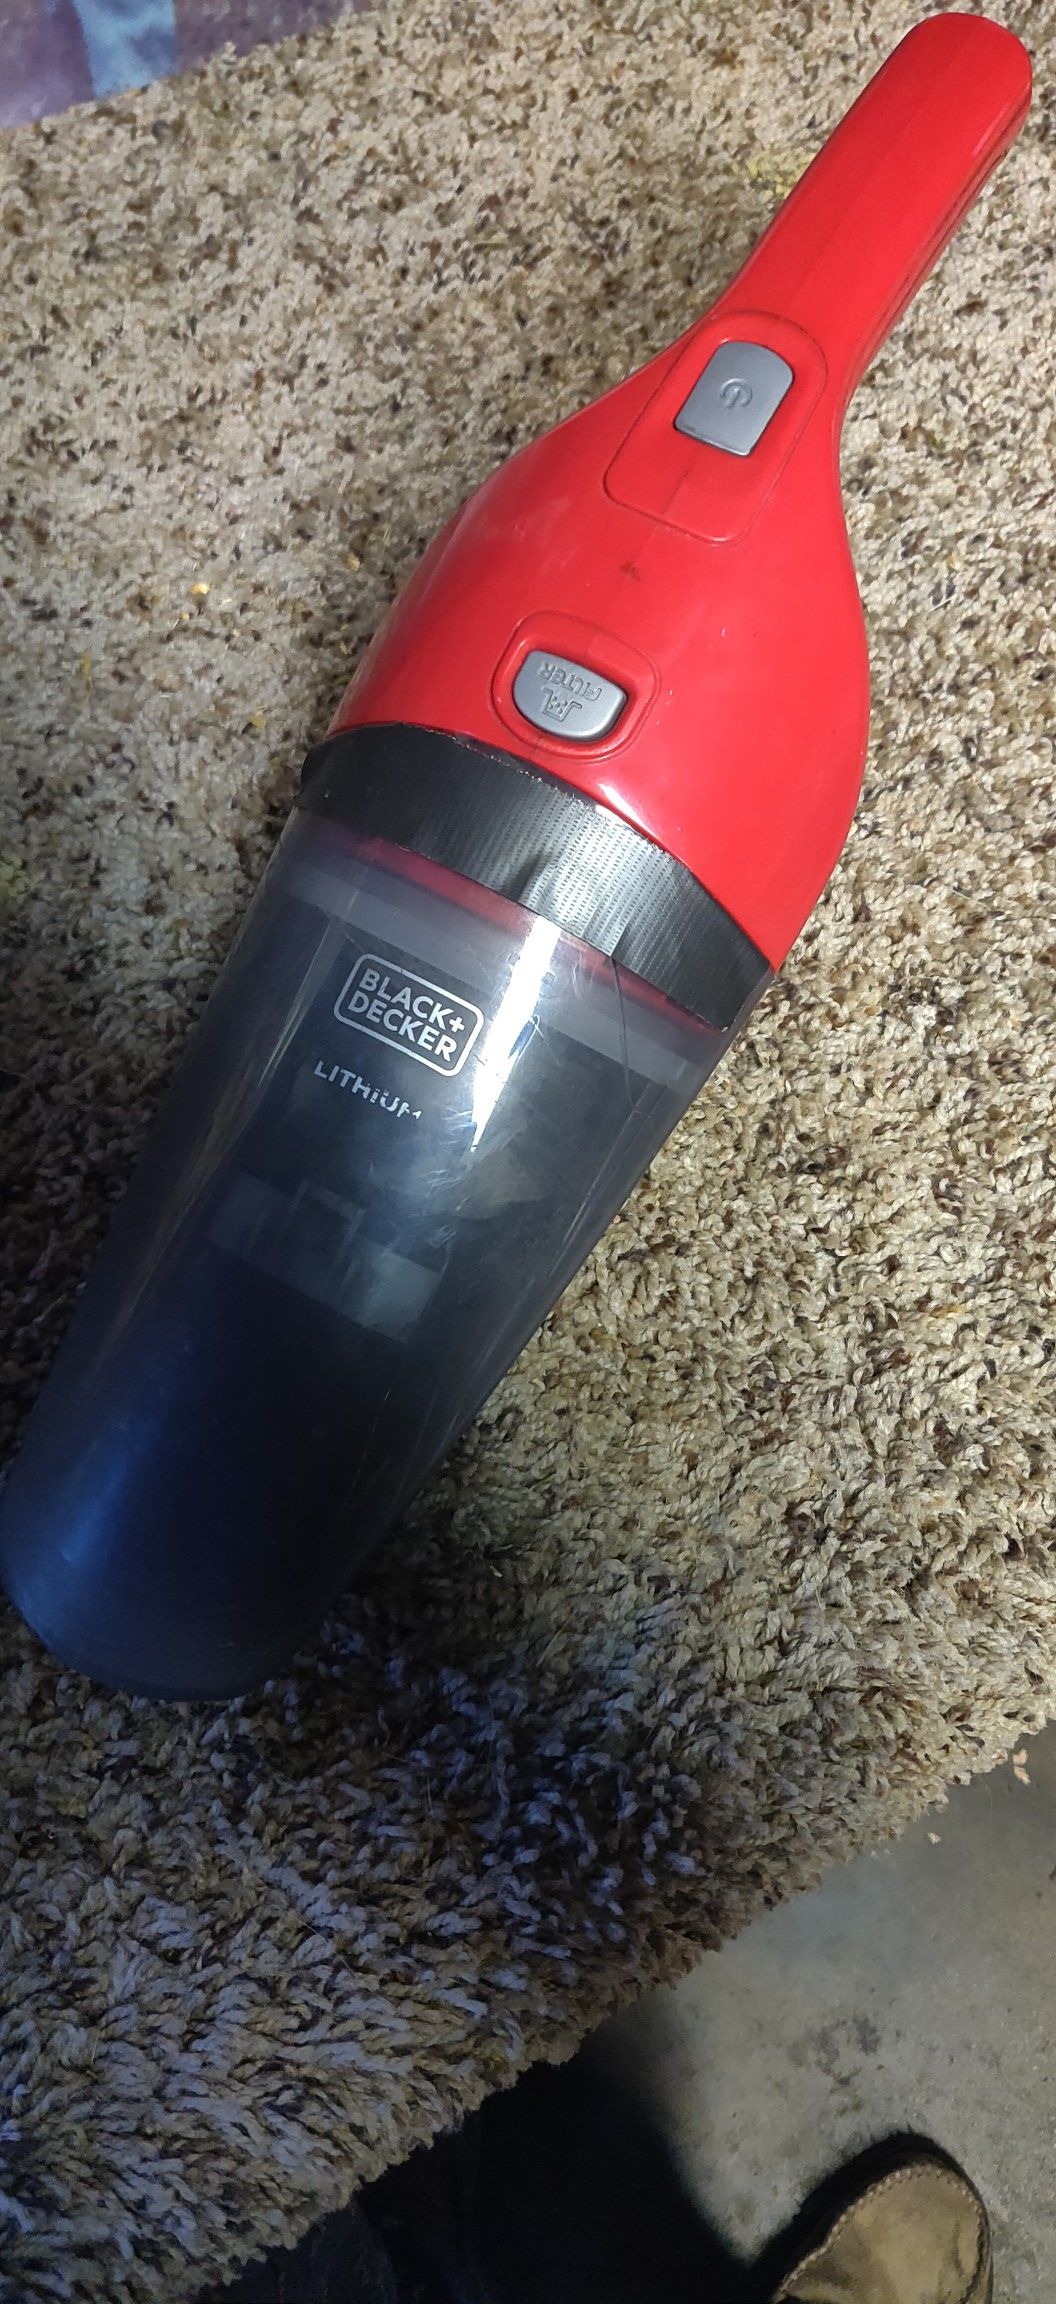 Black + Decker lithium handheld vacuum